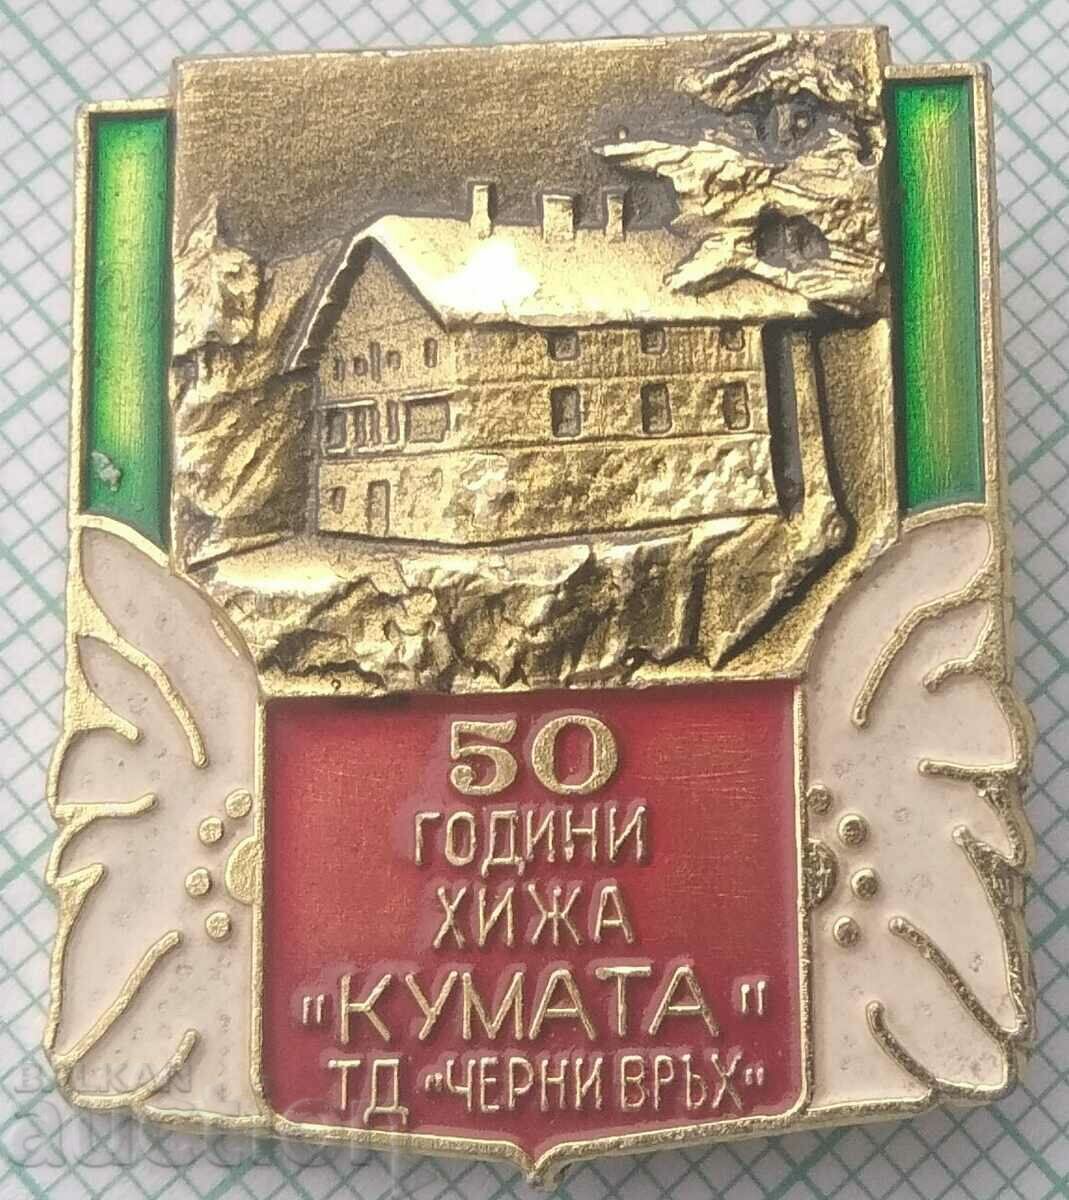 15040 Τουριστικός Σύλλογος Cherni Vrah - 50g Kumata hut